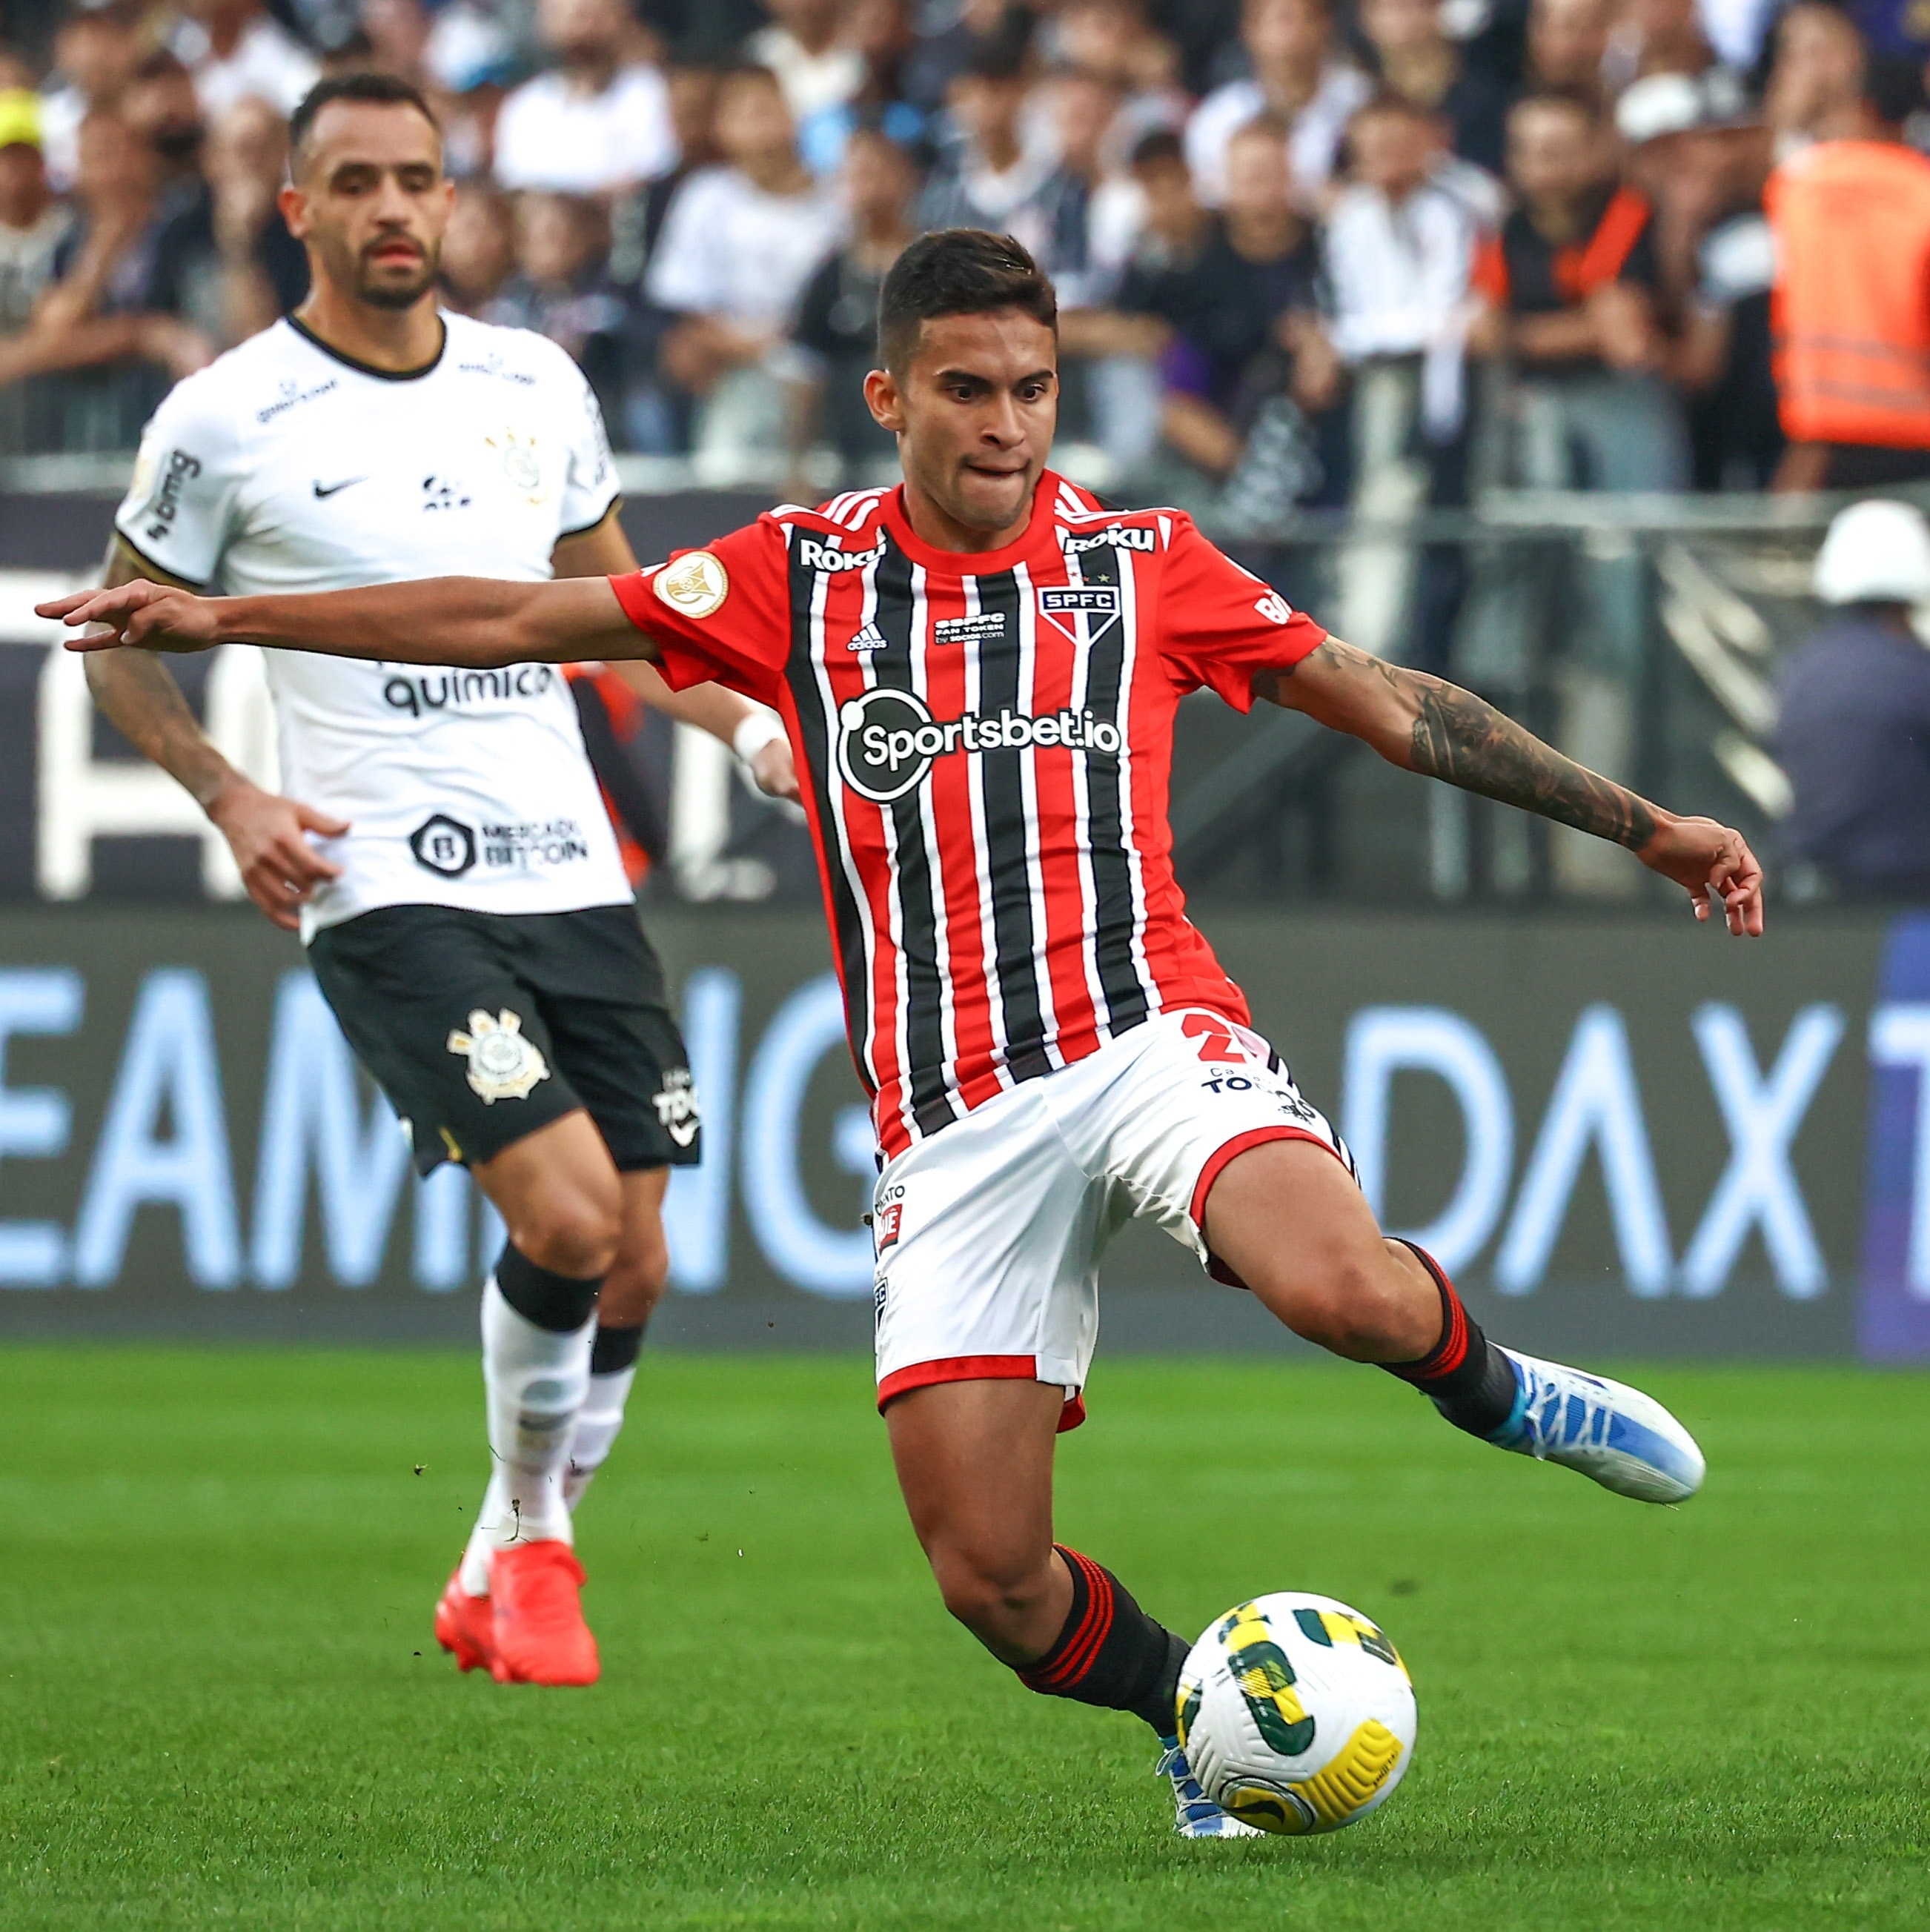 Corinthians busca empate com São Paulo e mantém tabu em Itaquera